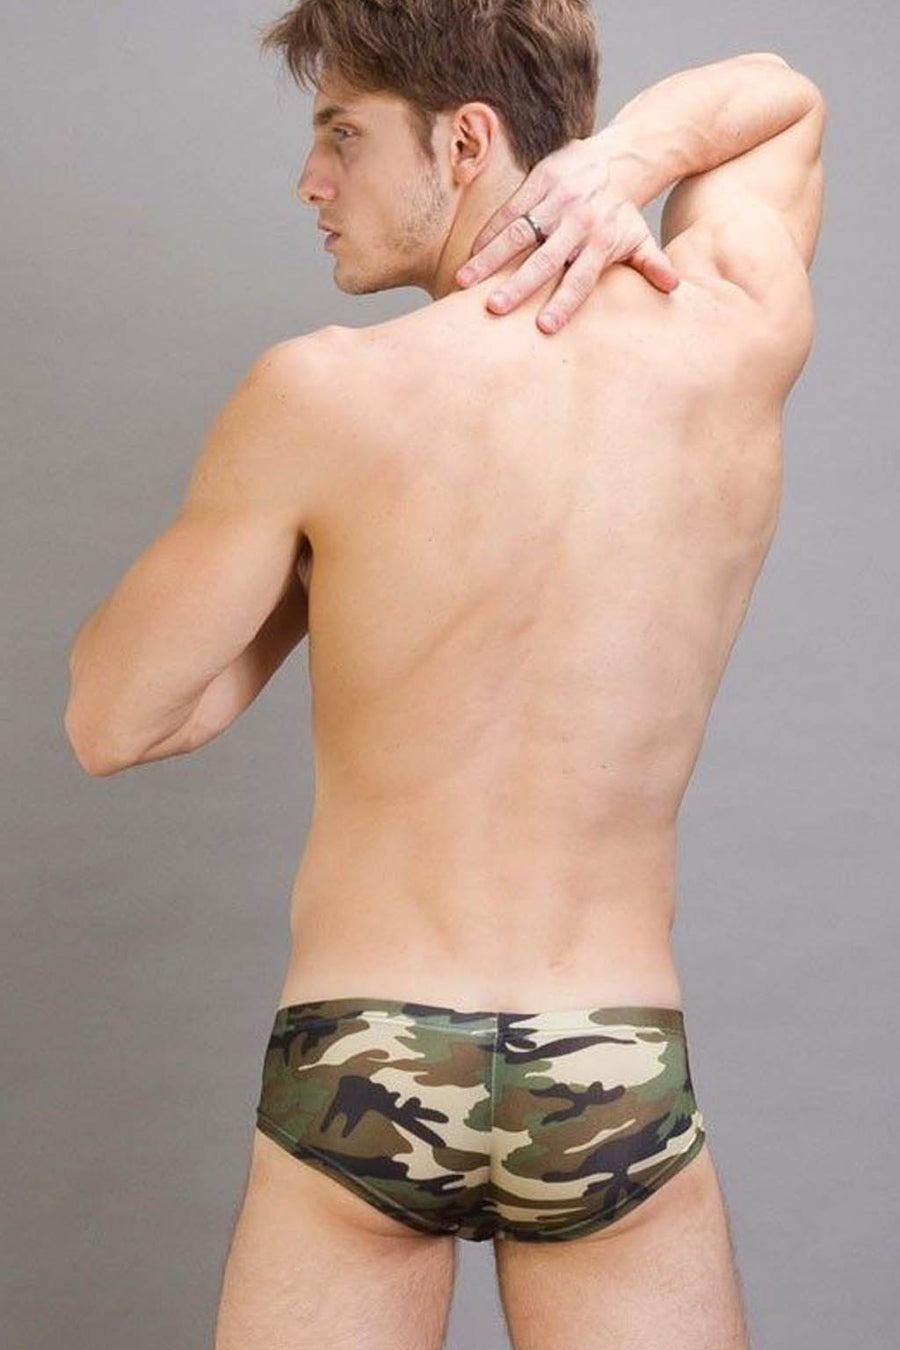 Manview Camouflage Cheeky Brief Lowrise Camo Underwear – Bodywear for Men